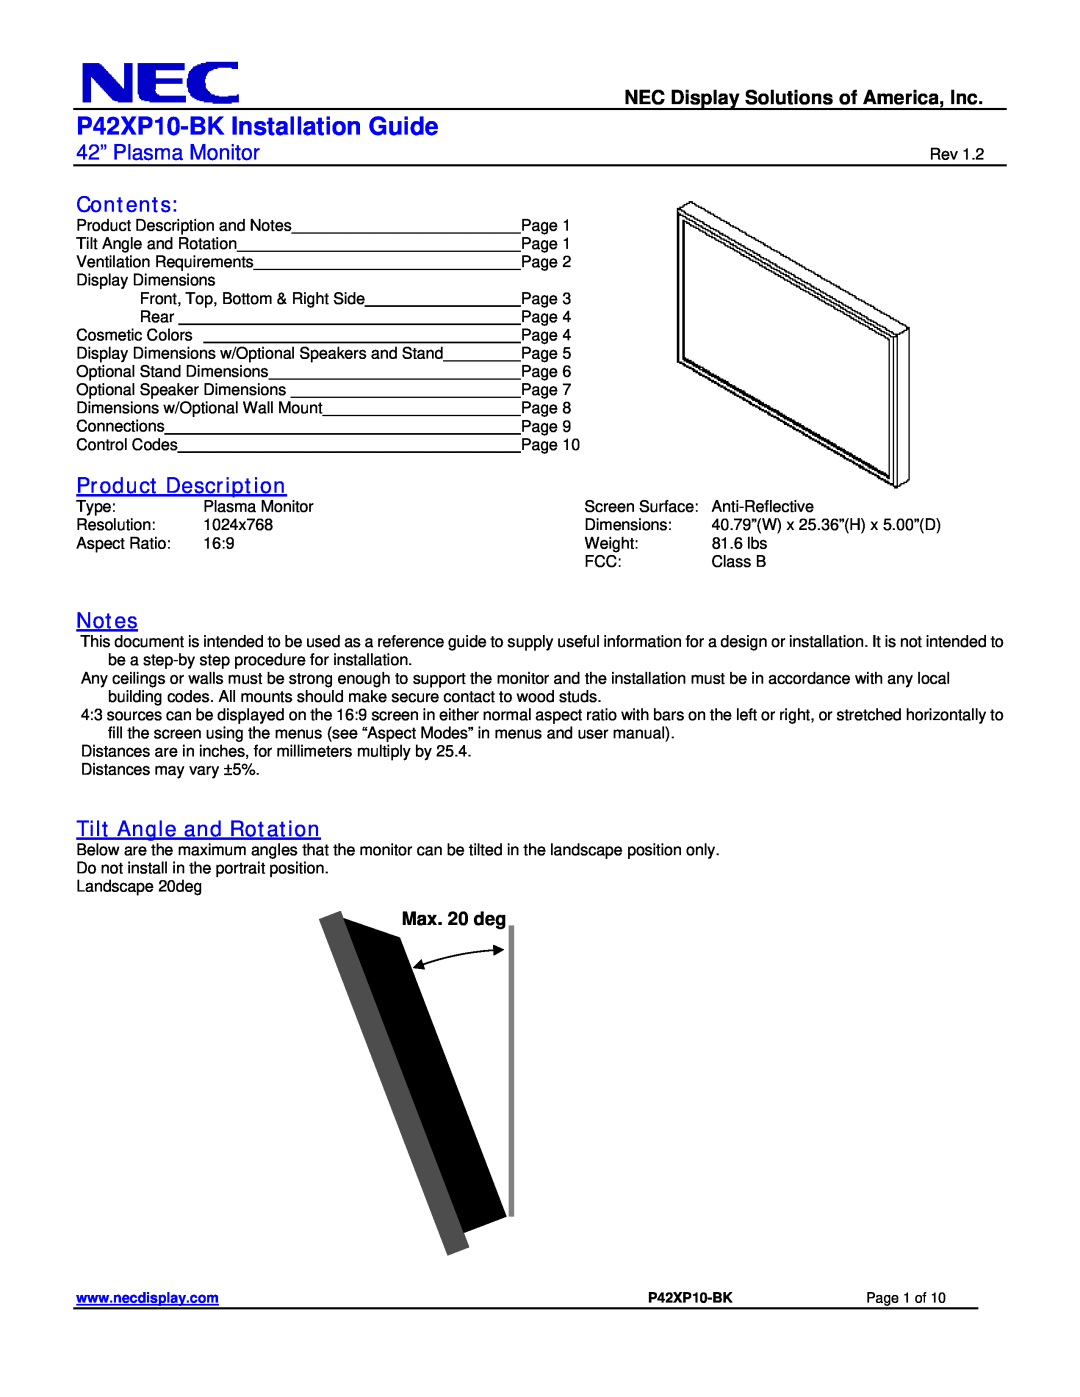 NEC dimensions P42XP10-BK Installation Guide, 42” Plasma Monitor, Contents, Product Description, Max. 20 deg 